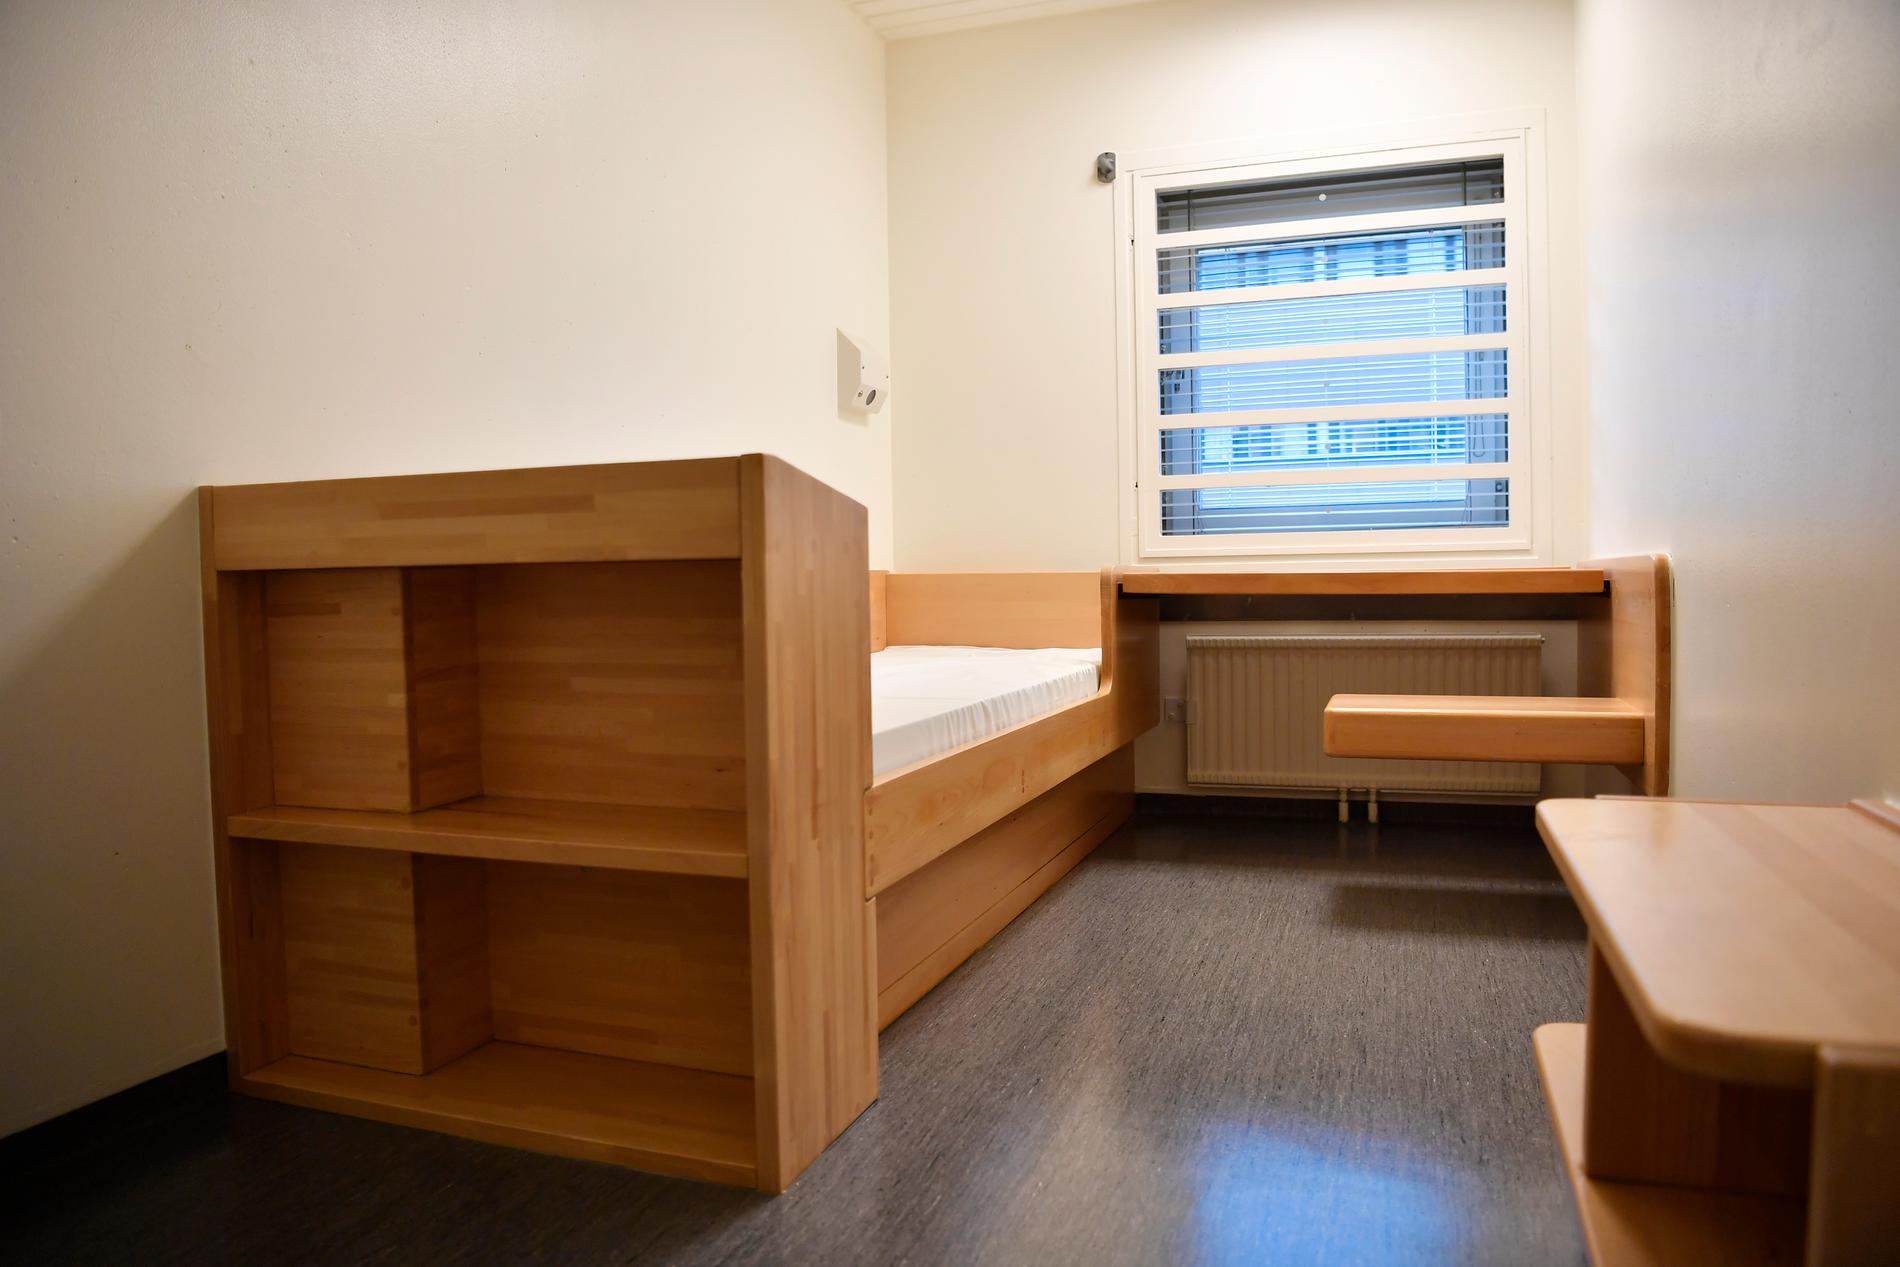 Alla intagna på Kronobergshäktet har egna celler, med säng, skrivbord och förvaringsutrymmen.